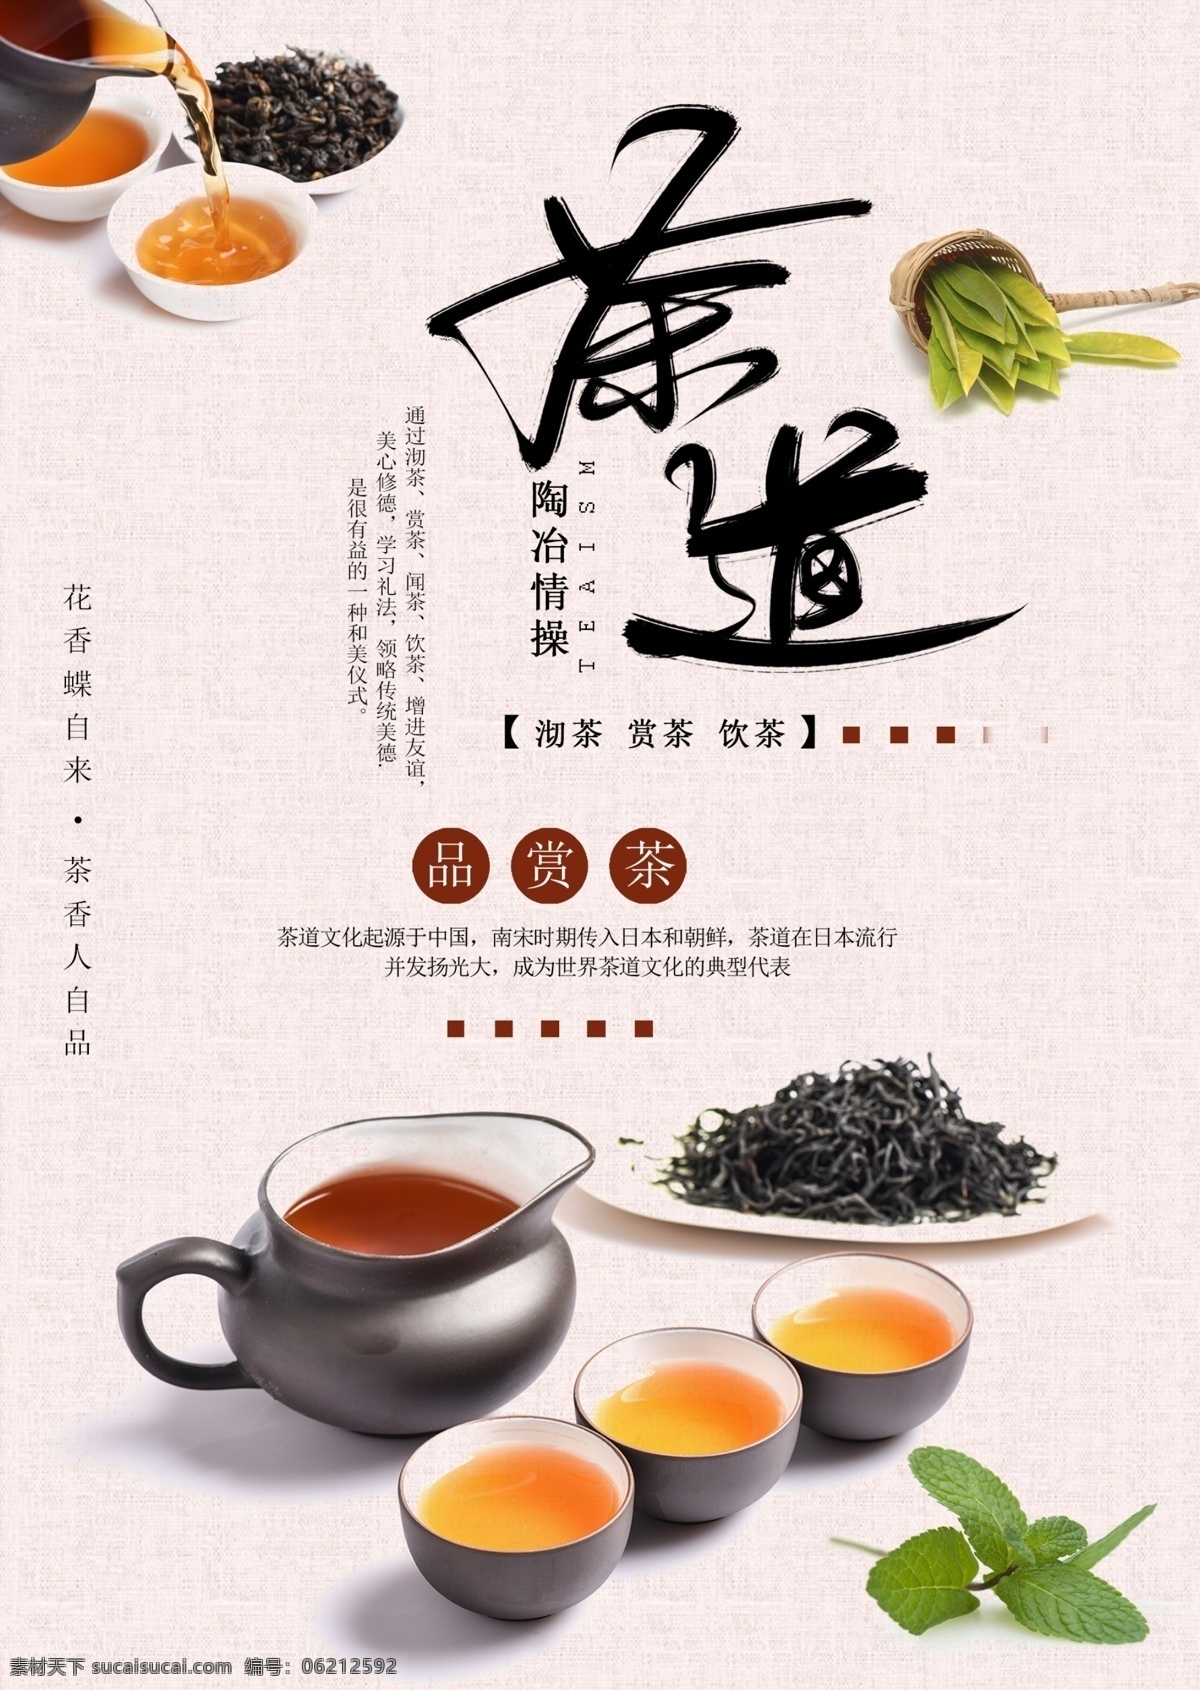 中华 茶文化 海报 中华茶文化 茶道 传统文化 养生茶文化 品茶文化 茶韵 茶叶 茶 分层